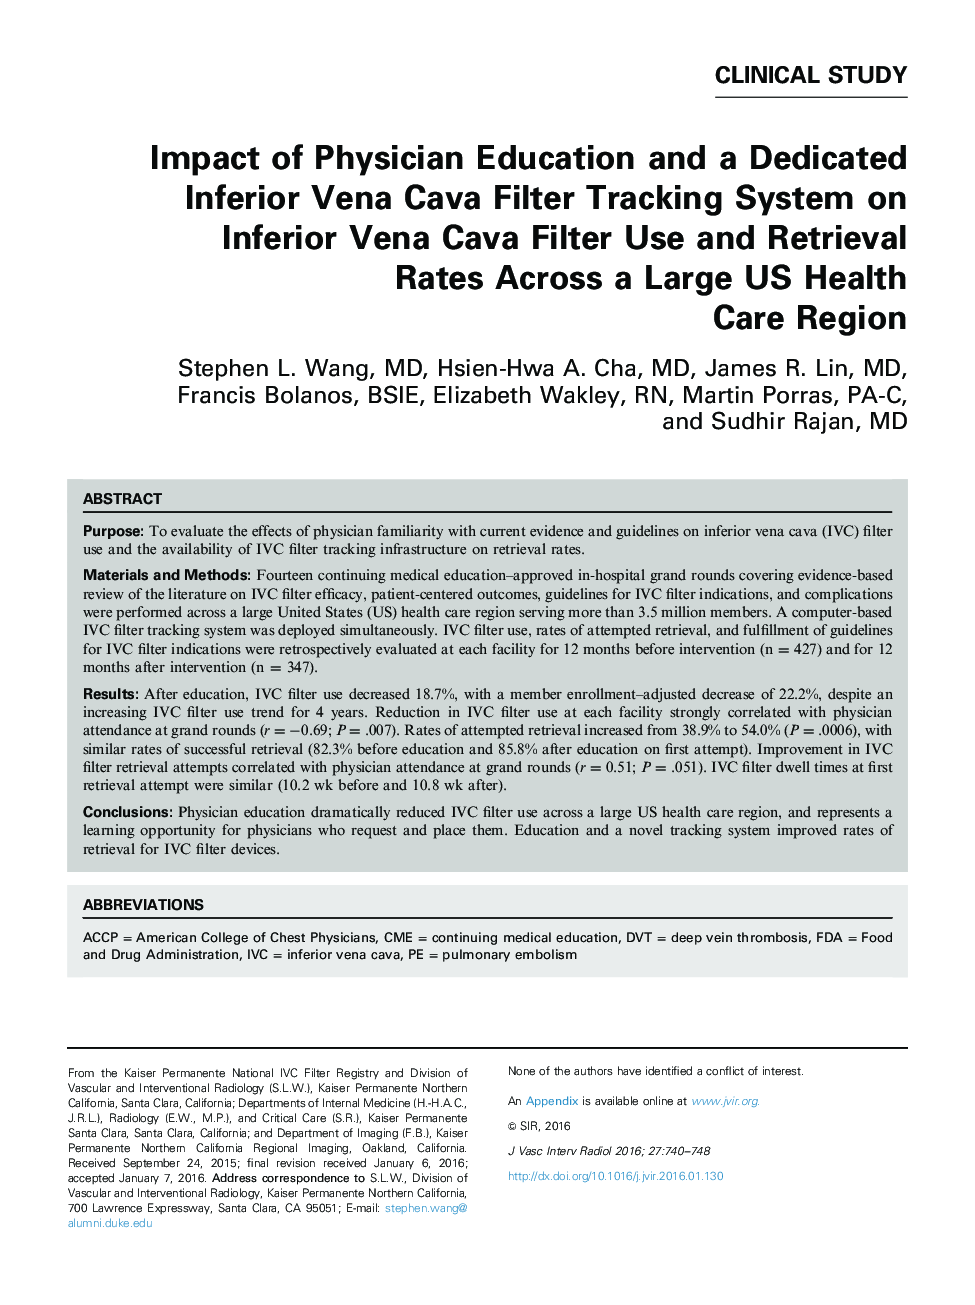 تأثیر آموزش پزشکان و یک سیستم پیگیری اختصاصی فیلتر وینا کوا فیلتر در طبقه پایین وینا کوا فیلتر و استفاده از نرخ بهره در یک منطقه بهداشت و درمان بزرگ ایالات متحده 